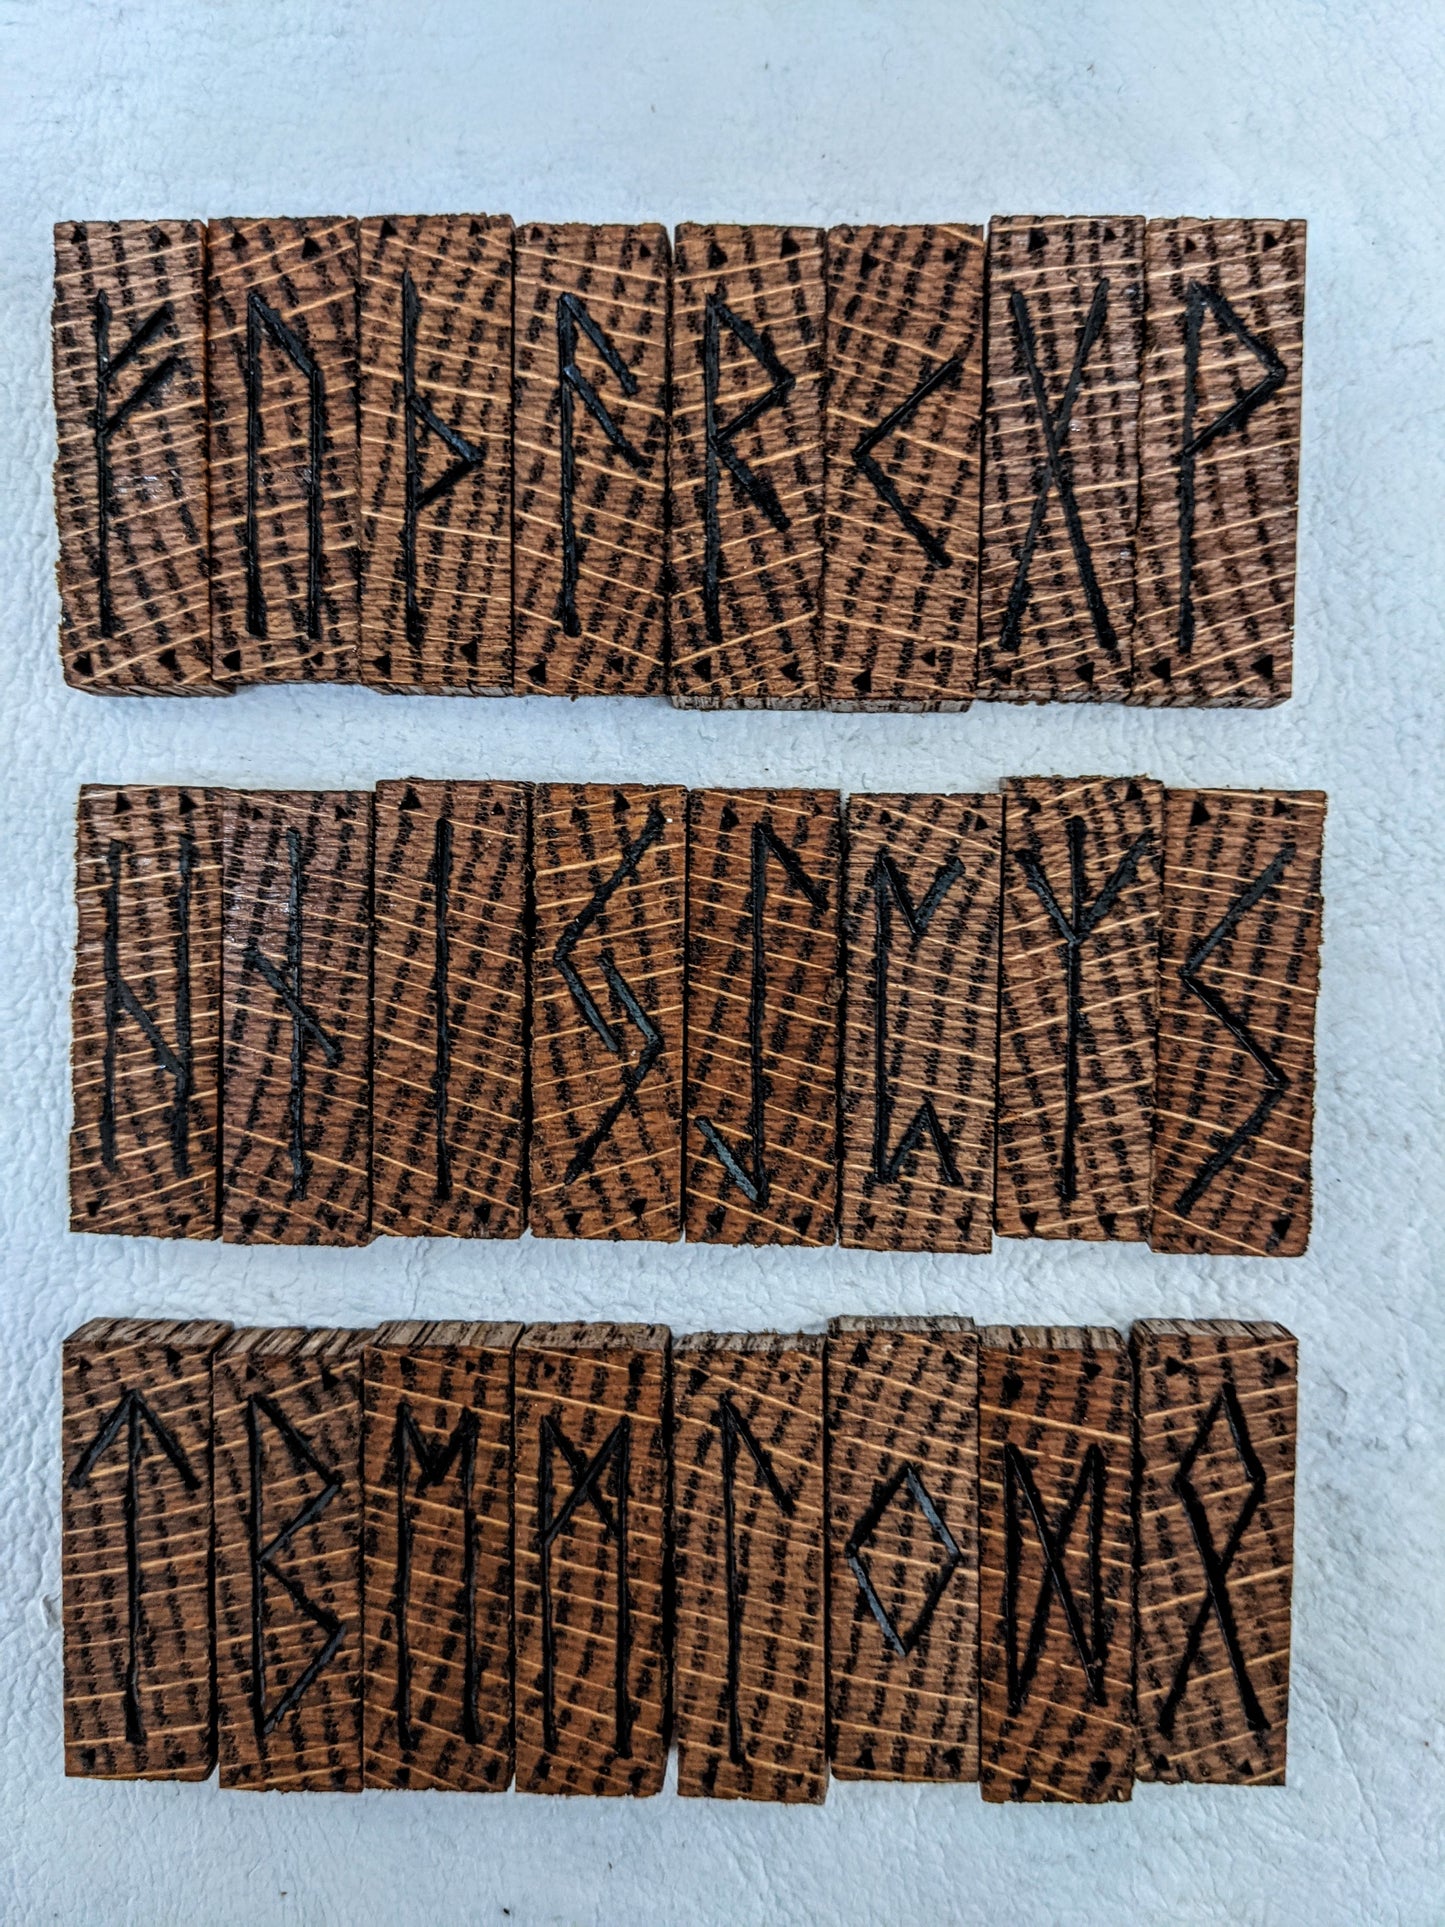 Red Oak Rune Sticks Jormungandr Sand Tray Nornir Blind Pull Rune Set